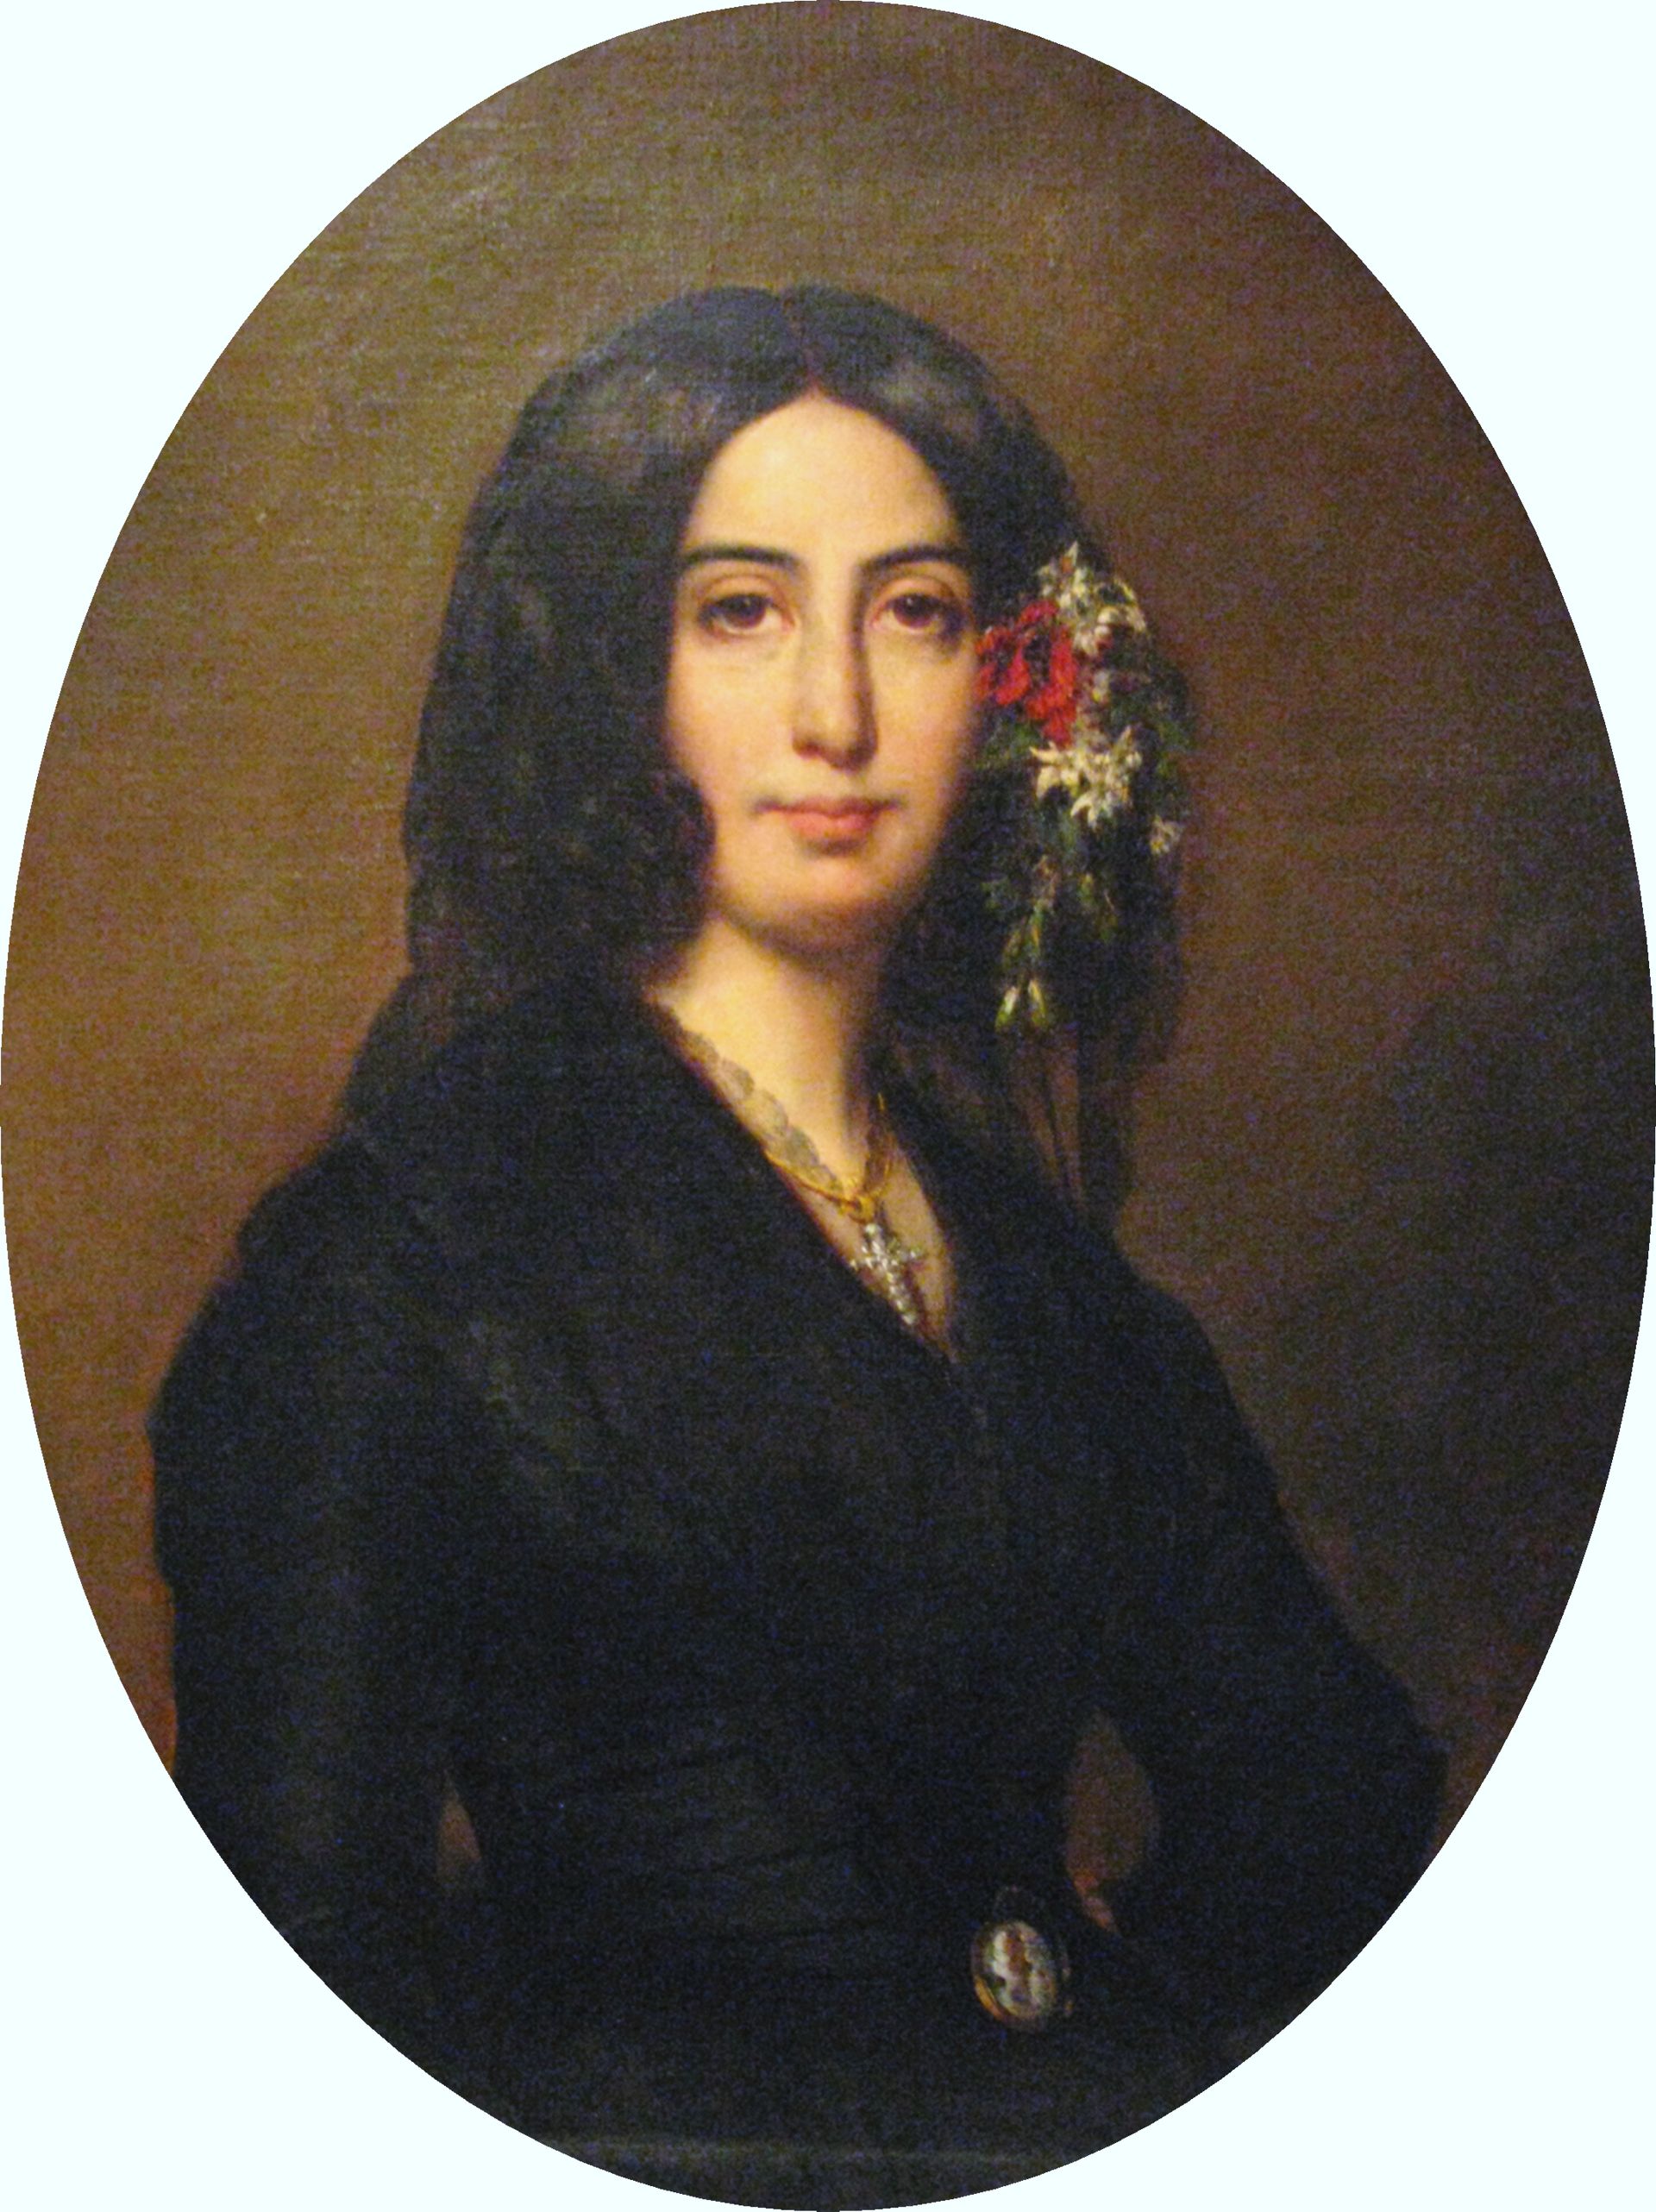 Portrait de George Sand par Auguste Charpentier (1838) coll. Musée de la vie romantique, à Paris.